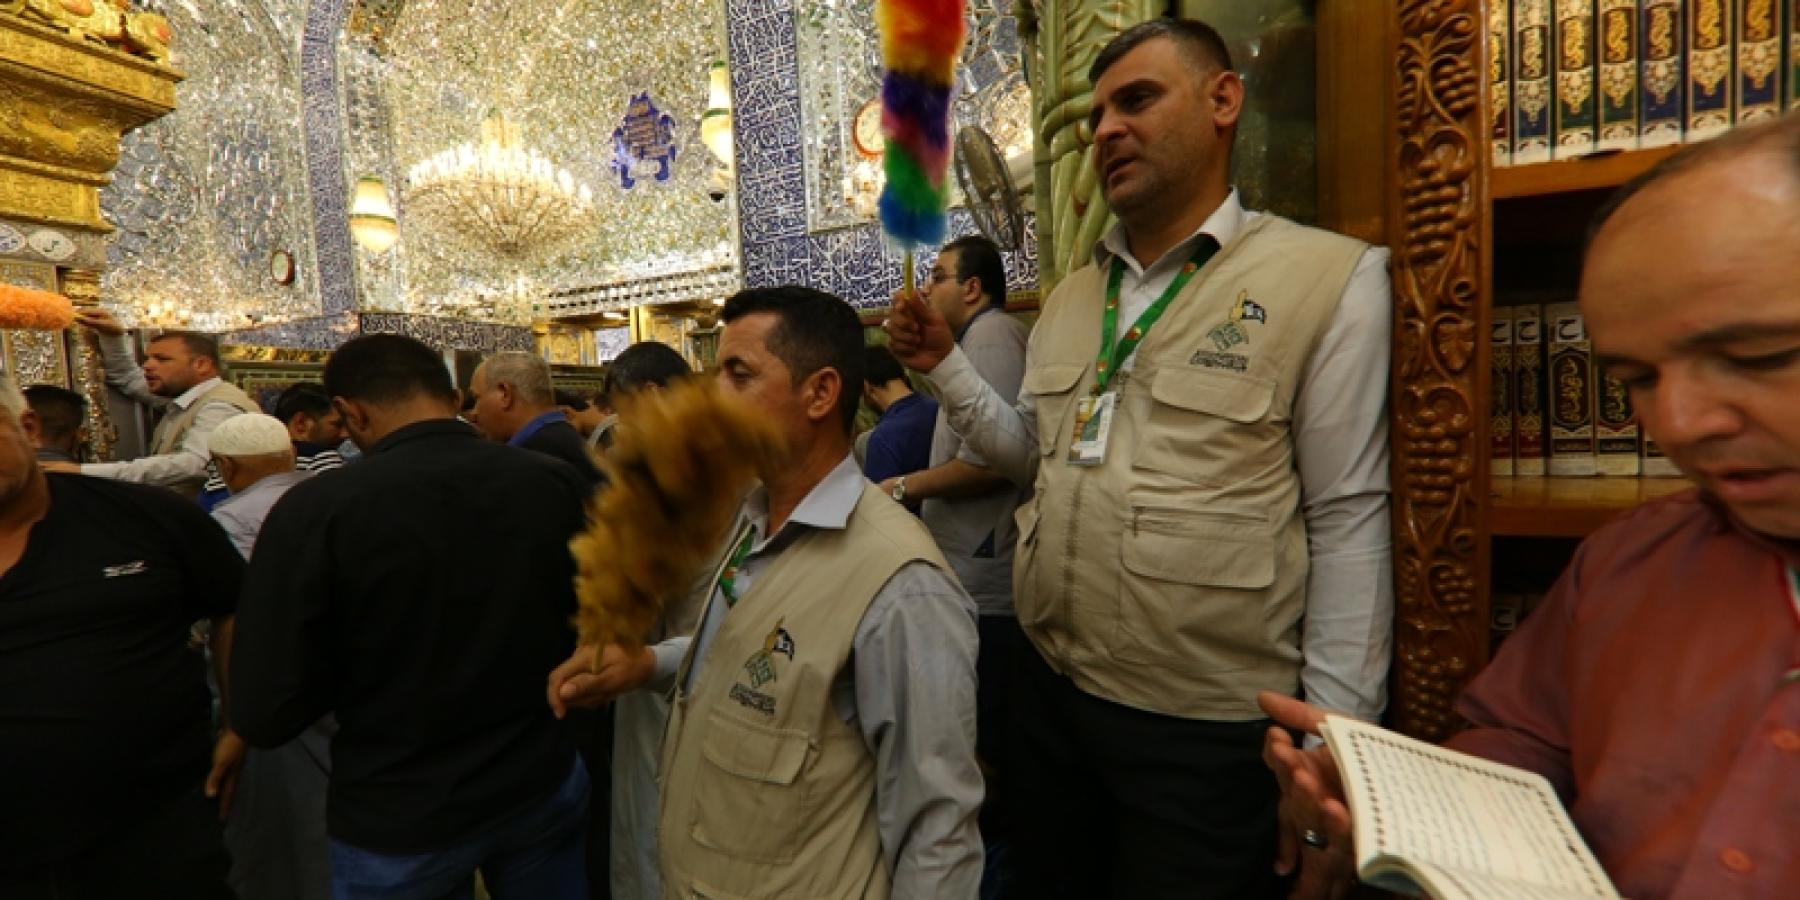 أكثر من ألف متطوع يتشرفون بخدمة الزائرين في رحاب مرقد أمير المؤمنين بأول أيام عيد الأضحى المبارك